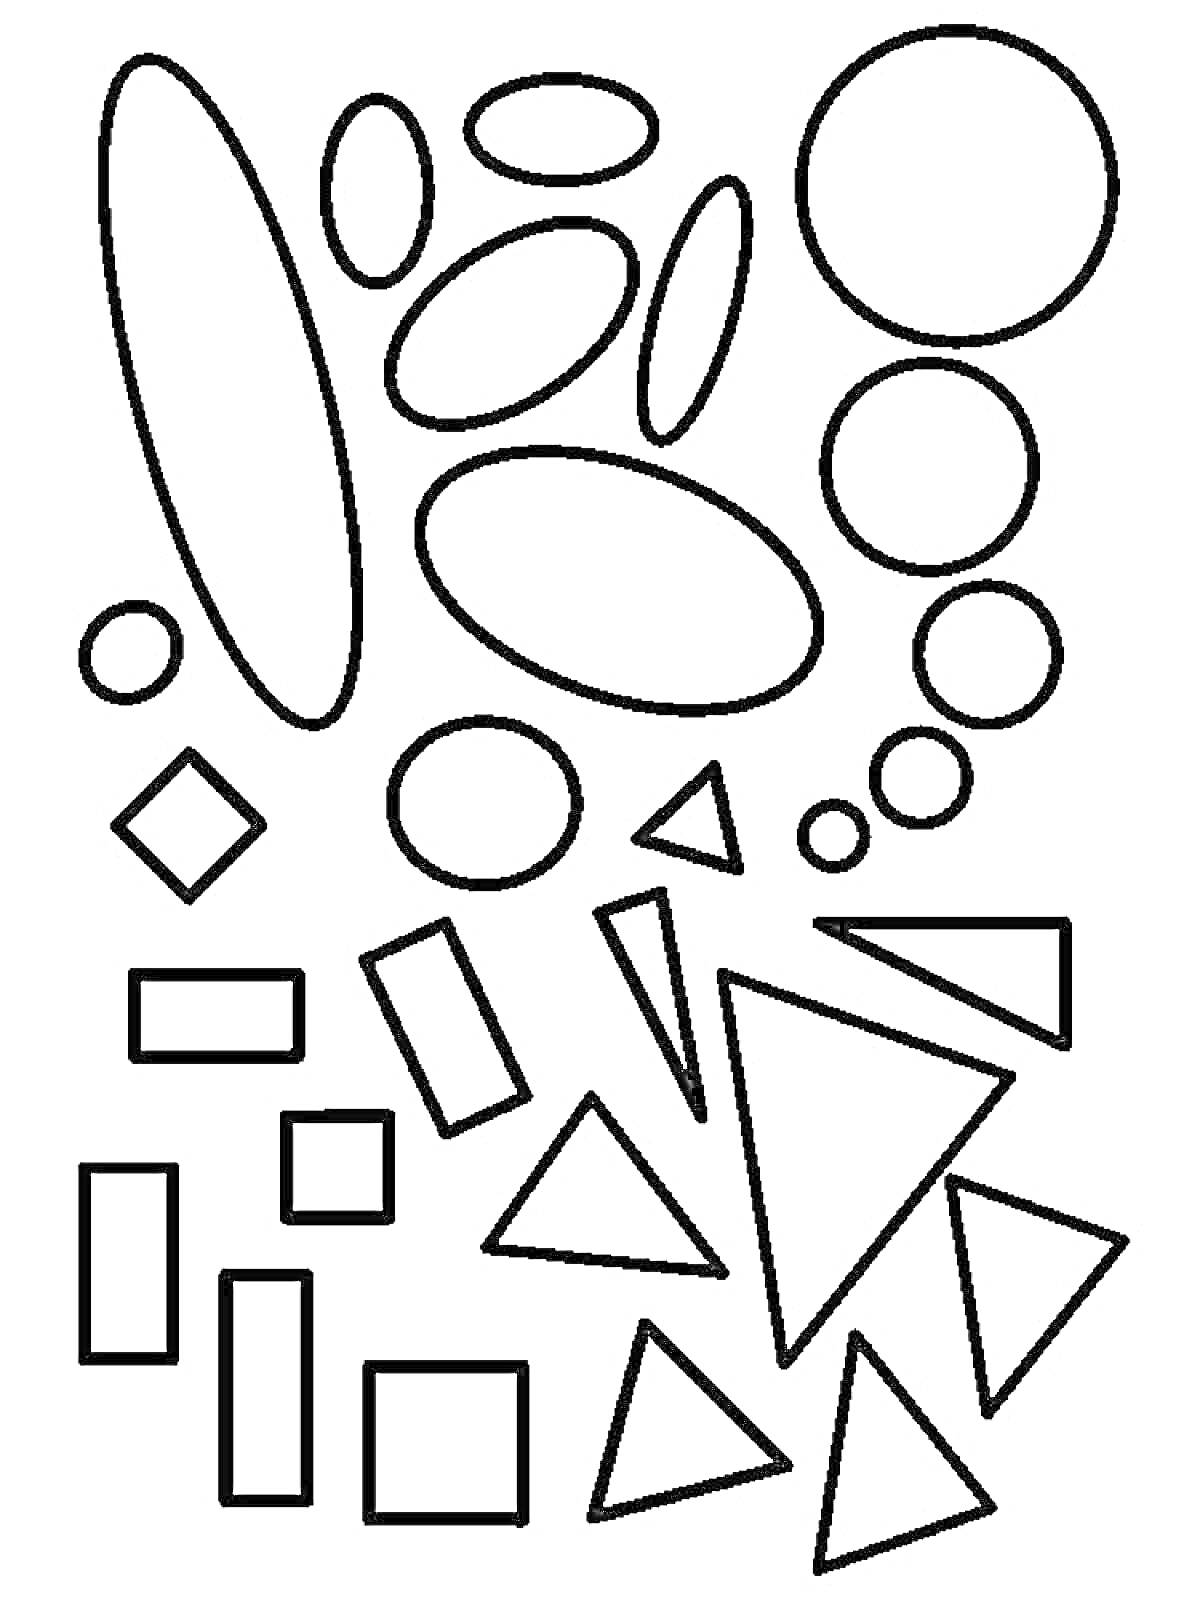 Раскраска Раскраска с геометрическими фигурами: круги, овалы, прямоугольники, квадраты, ромбы, треугольники